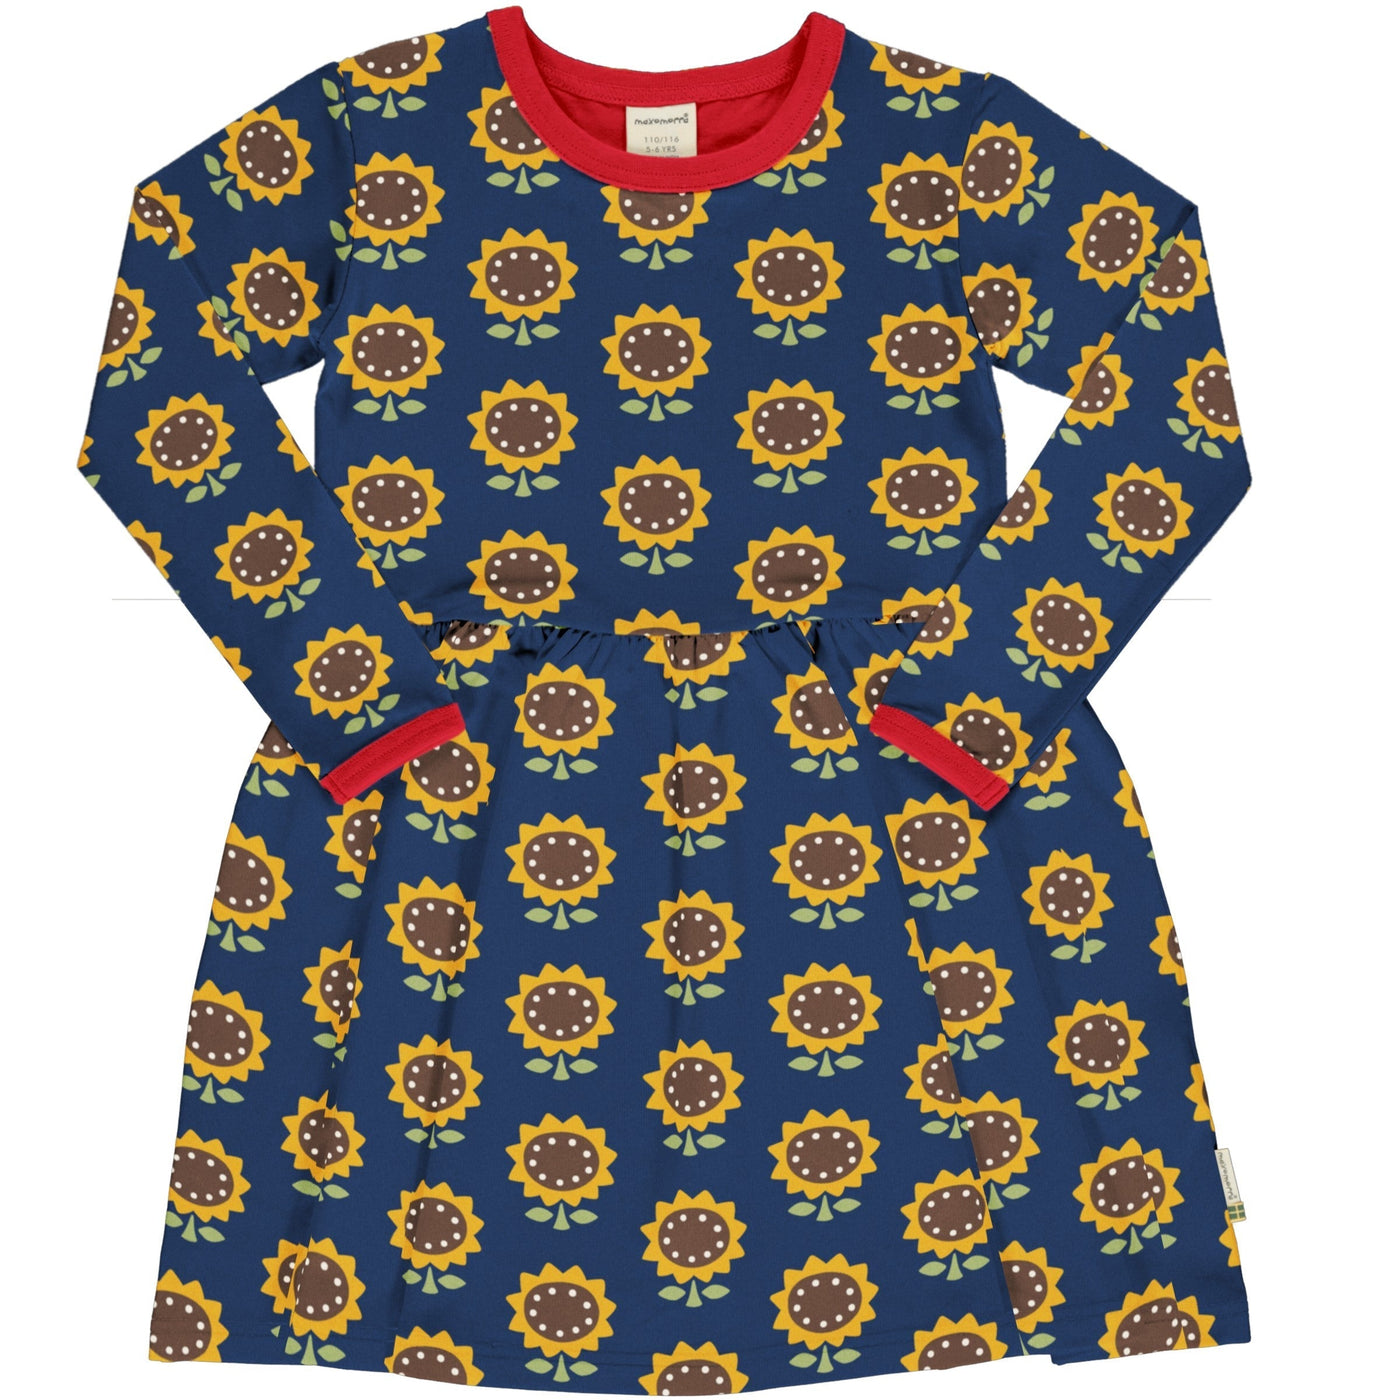 Maxomorra Long Sleeves Spin Dress - Sunflower